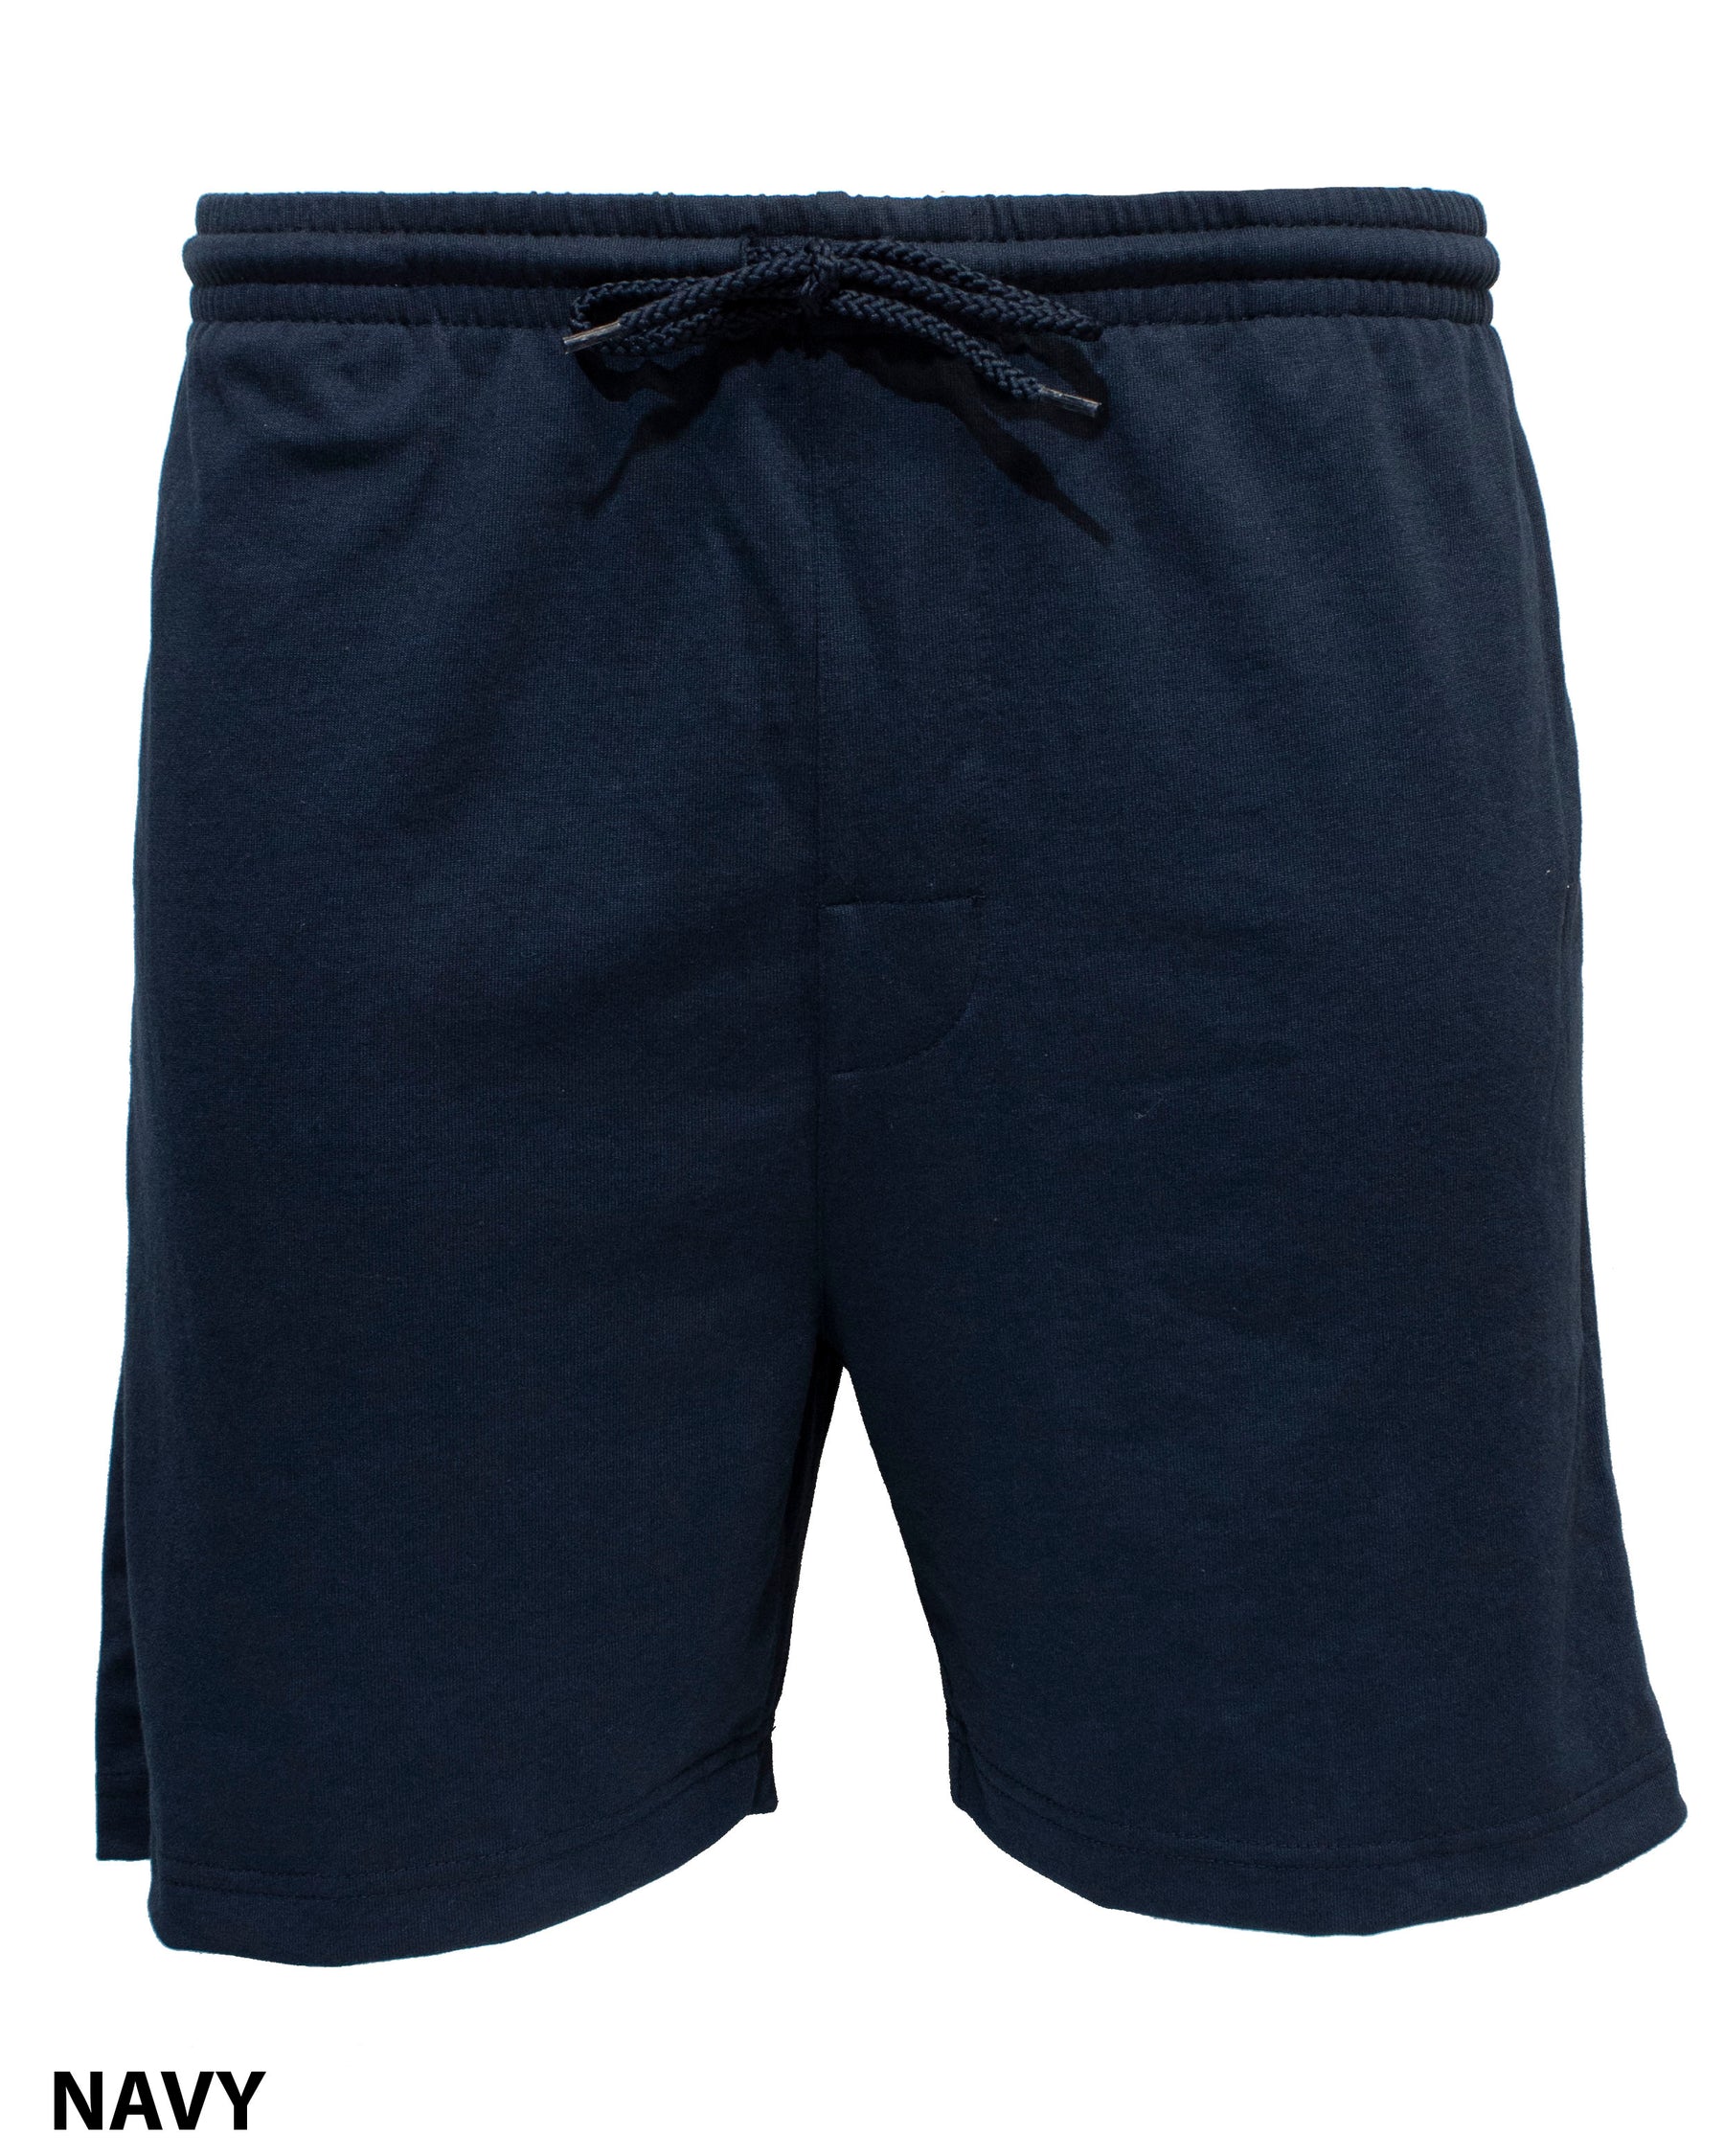 Work Shorts - Mainstreet Clothing